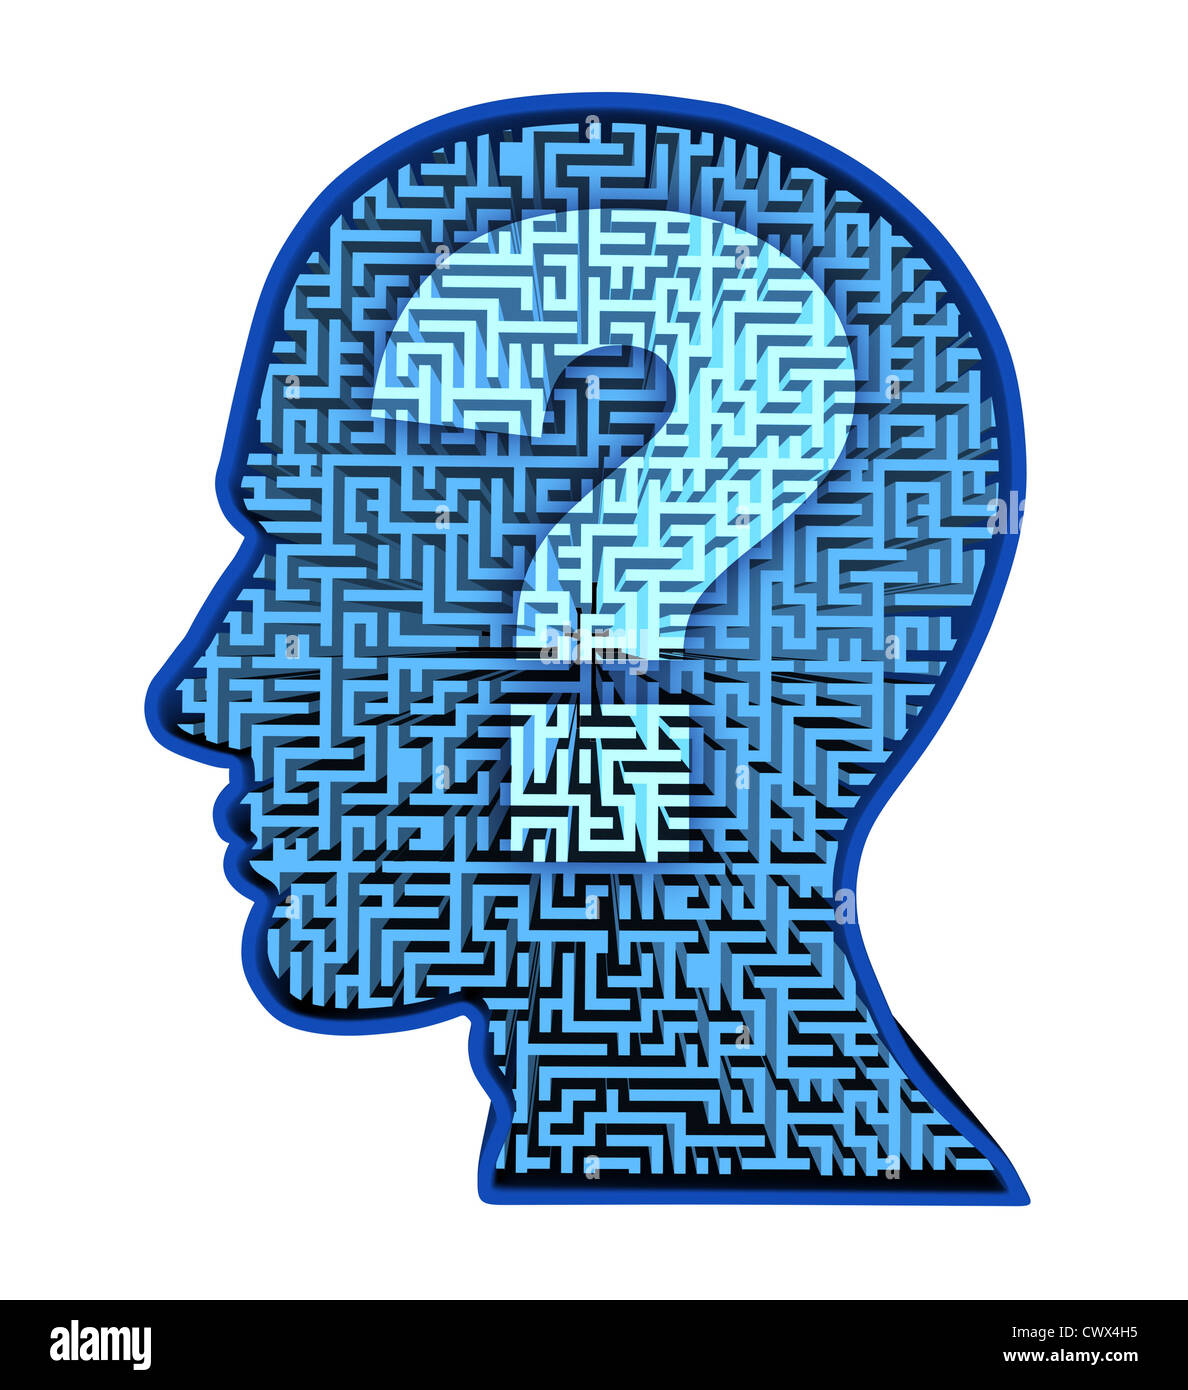 Menschliche Gehirn Forschung und Intelligenz Puzzle mit einem blau leuchtenden Irrgarten und Labyrinth in Form eines menschlichen Kopfes und Fragezeichen als Symbol für die Komplexität des Denkens als eine Herausforderung, von Ärzten zu lösen. Stockfoto